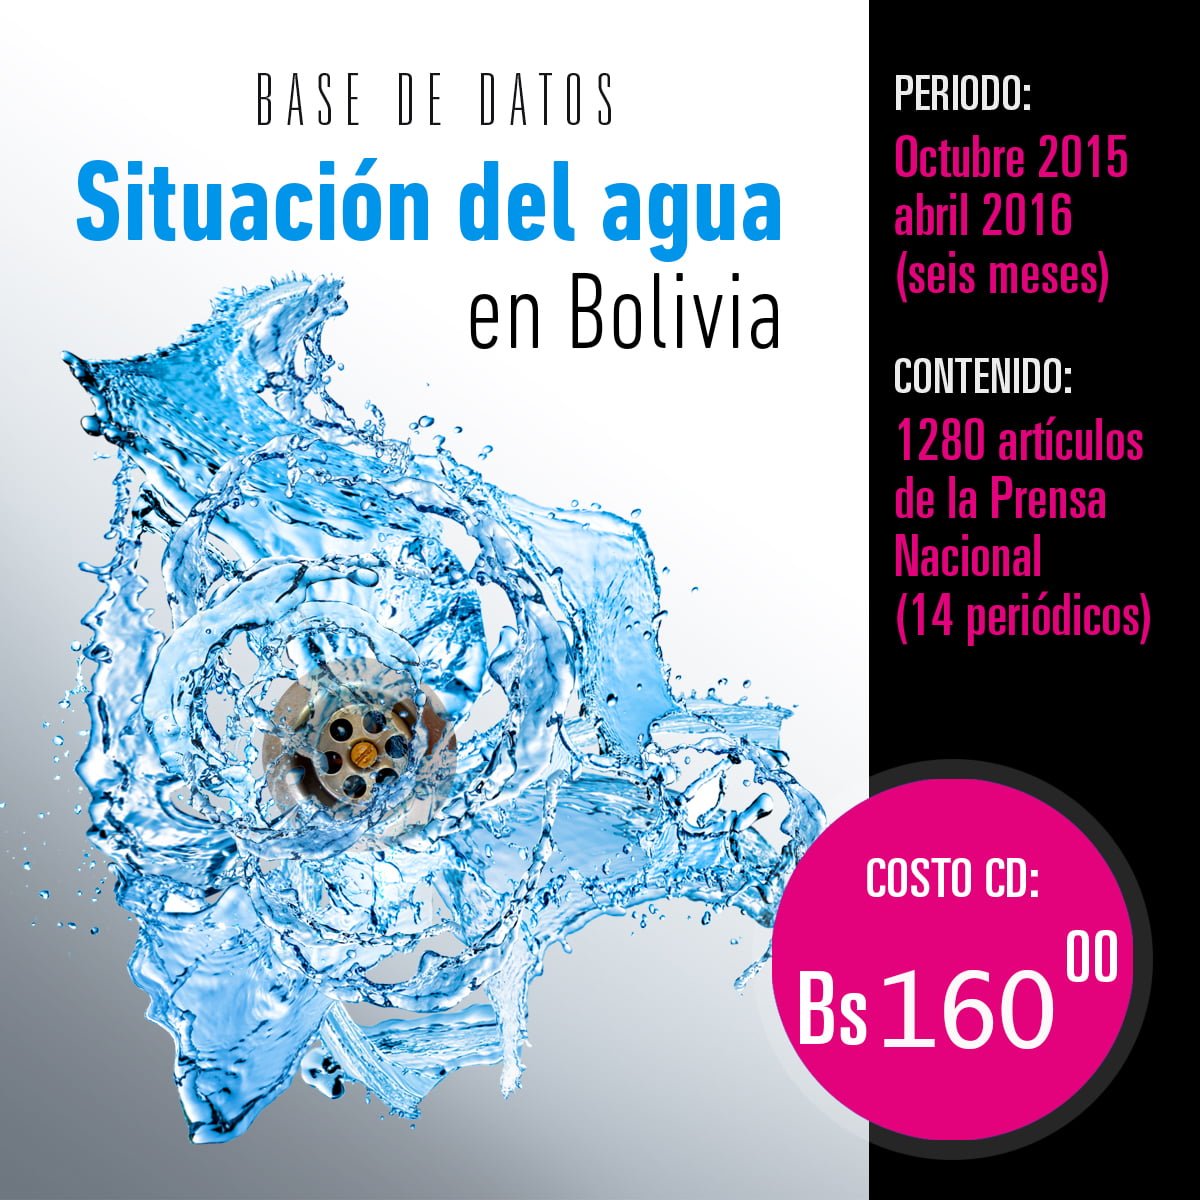 Situación del agua en Bolivia: Base de datos hemerográfica